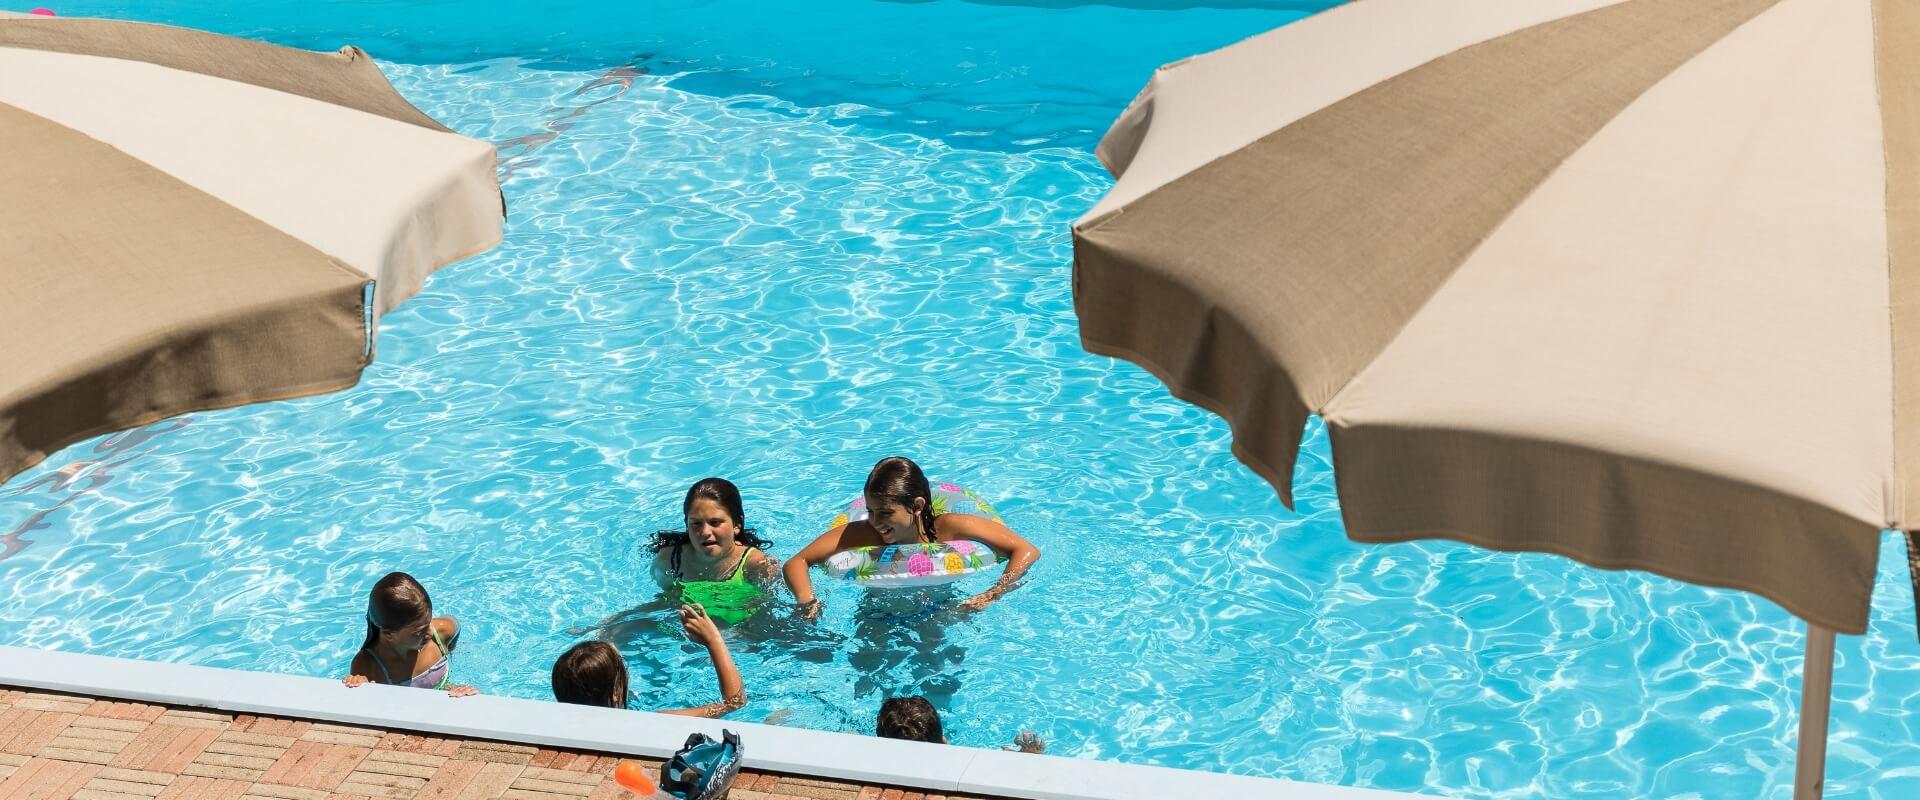 hotelgardencesenatico it july-in-all-inclusive-hotel-in-cesenatico-with-swimming-pool 014